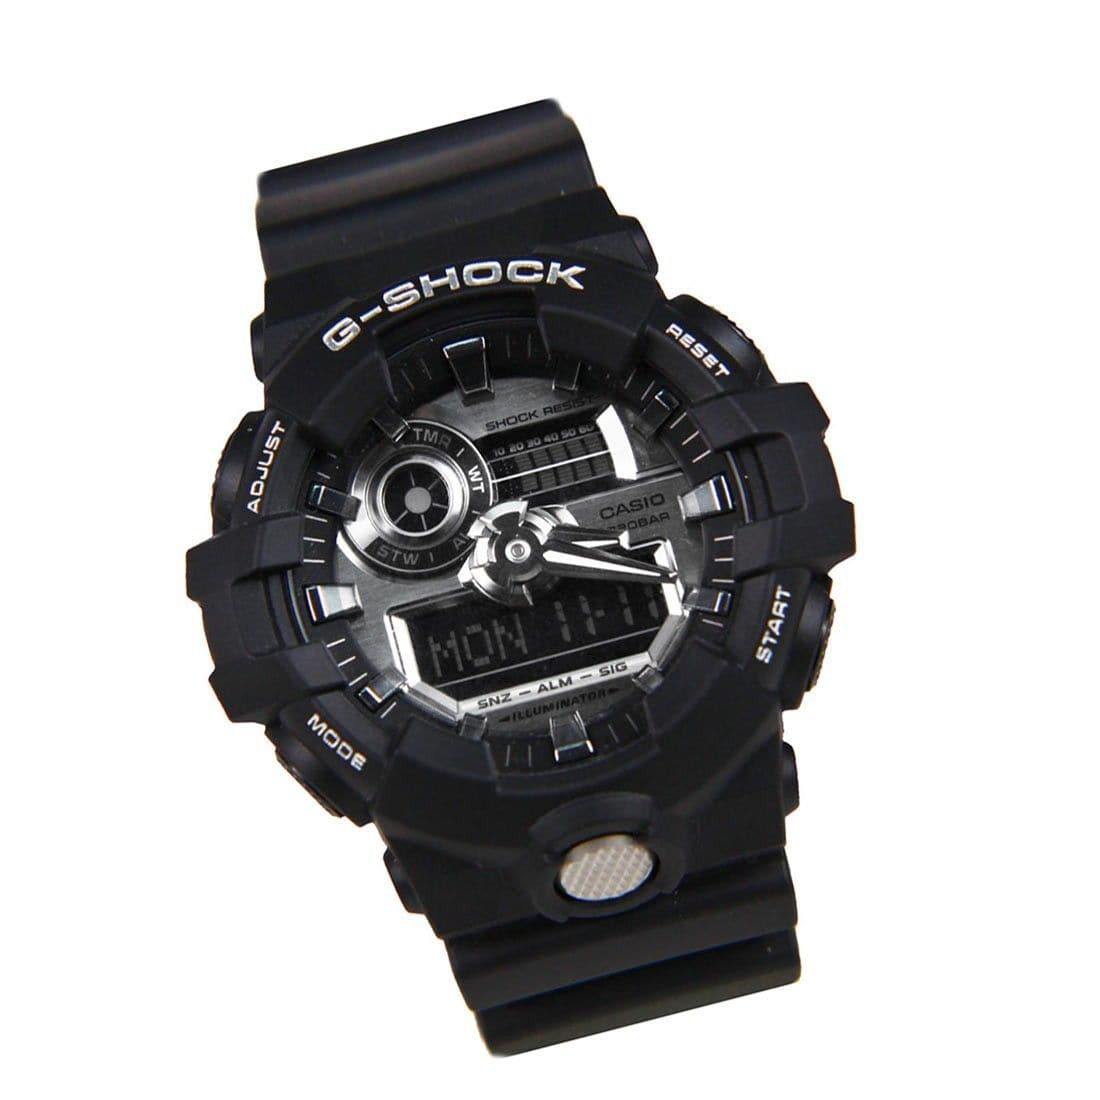 Casio G-Shock Analog-Digital Black x Metallic SIlver Watch GA710-1ADR - Diligence1International